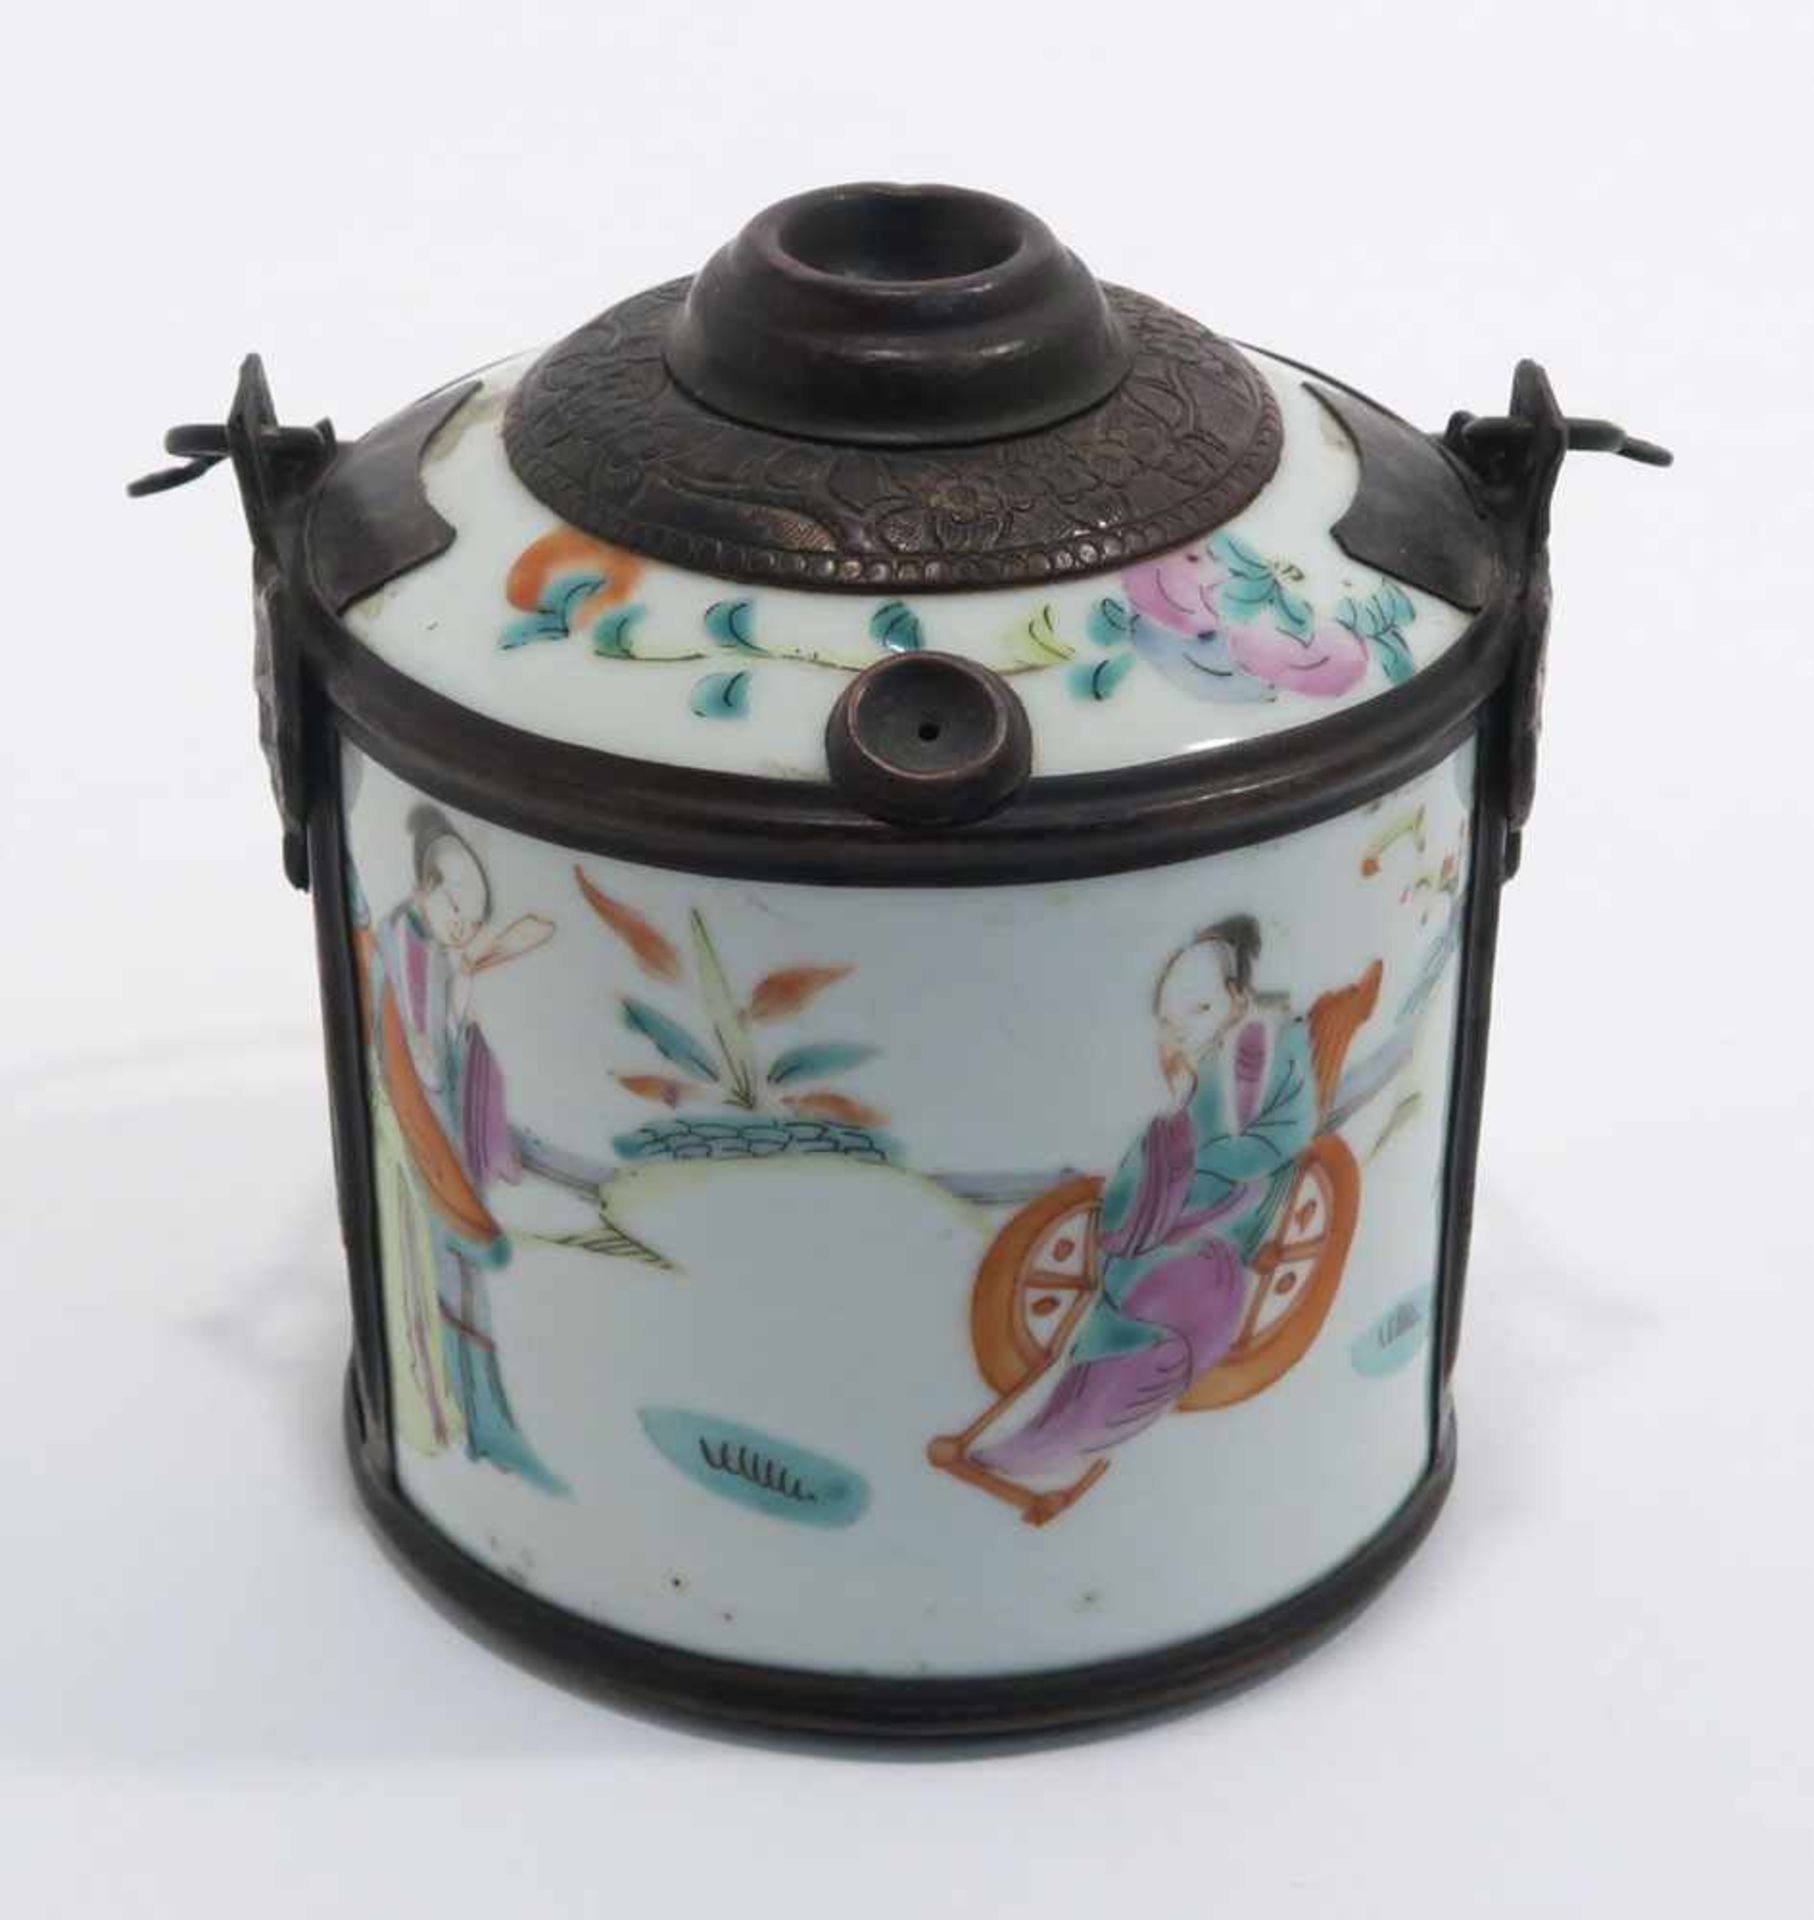 Opiumpfeife / Vase / DeckelgefäßChina. Porzellan, tlw. mit Kupfermontierung. Verschiedene bunte bzw. - Bild 6 aus 21